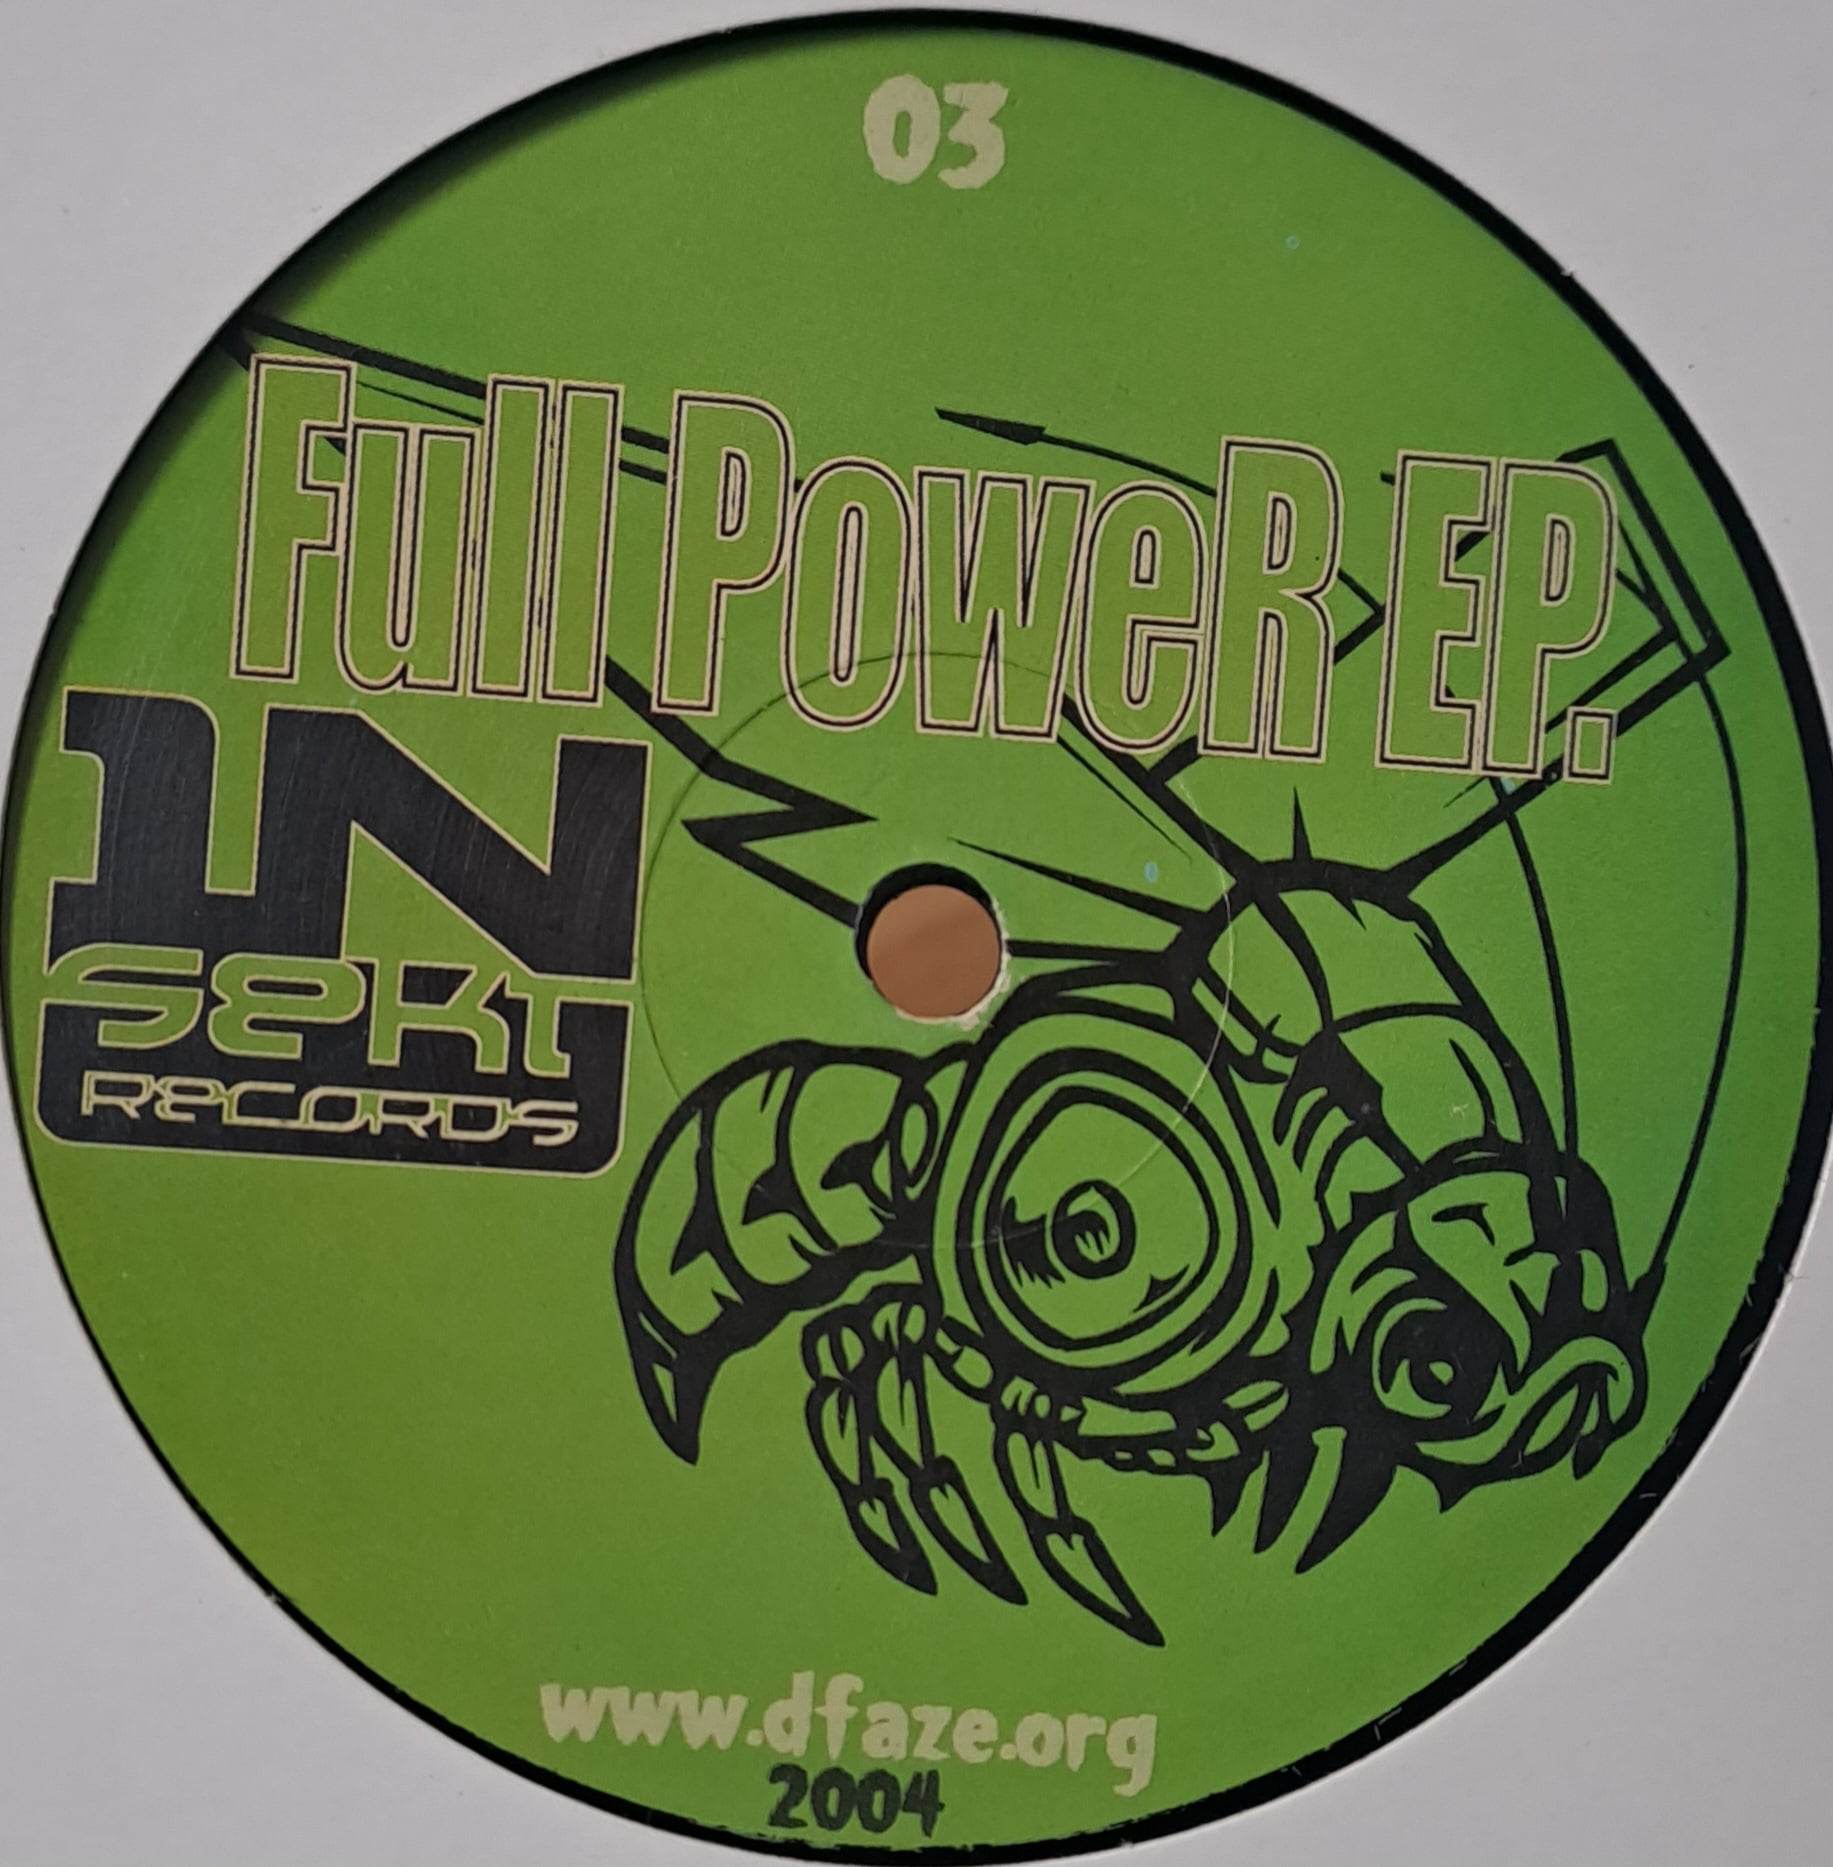 1) Insekt Records 03 - vinyle hardcore